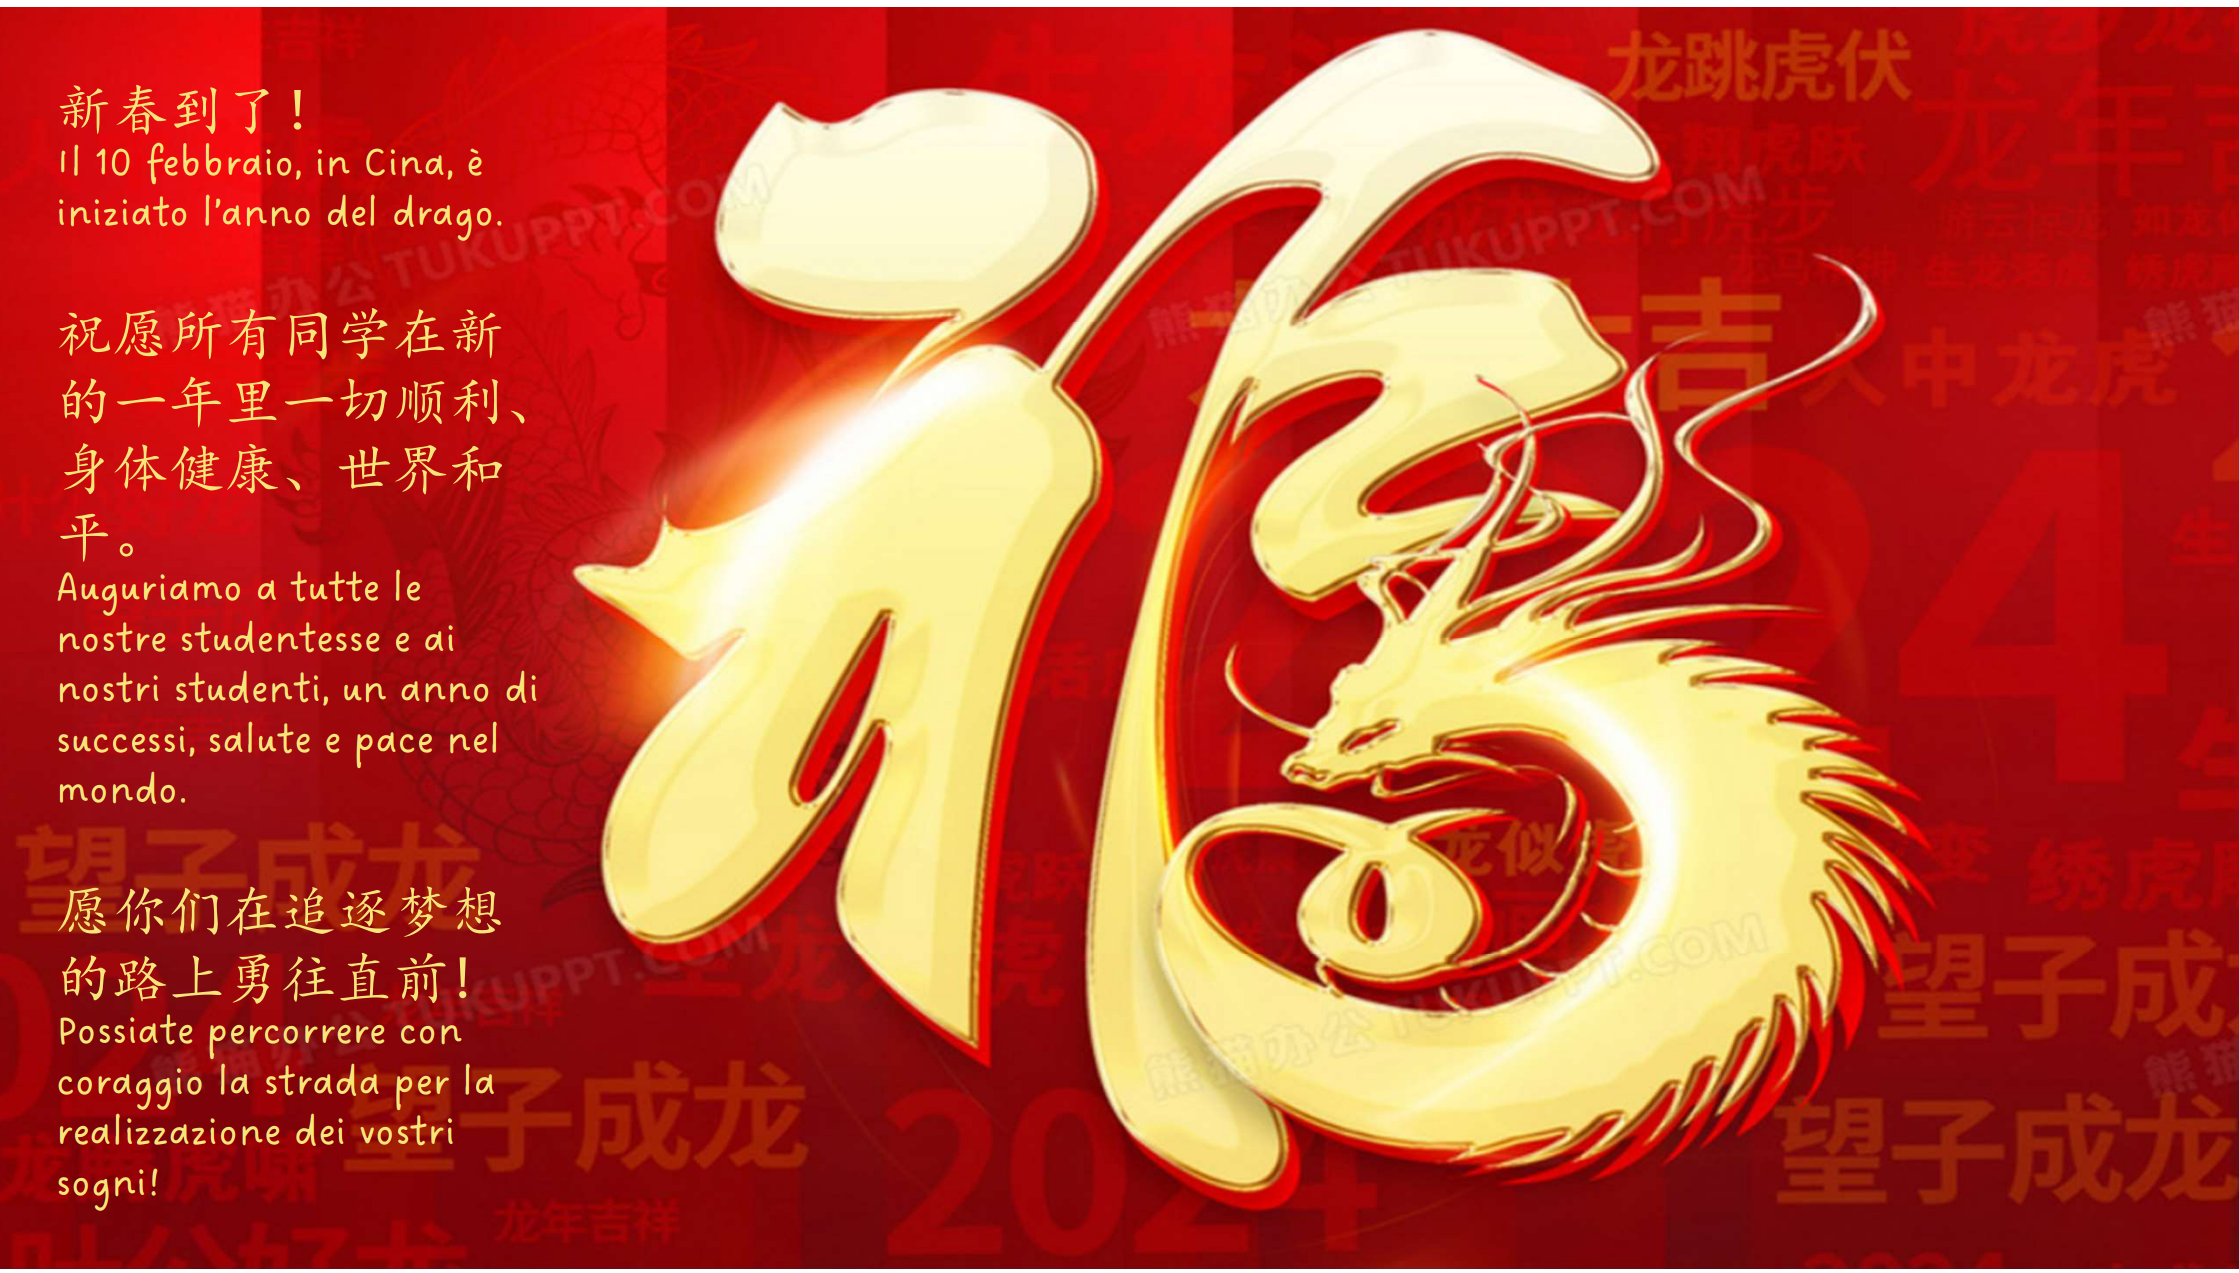 Capodanno cinese anno del drago simbolo di libertà - ITES Luigi Einaudi